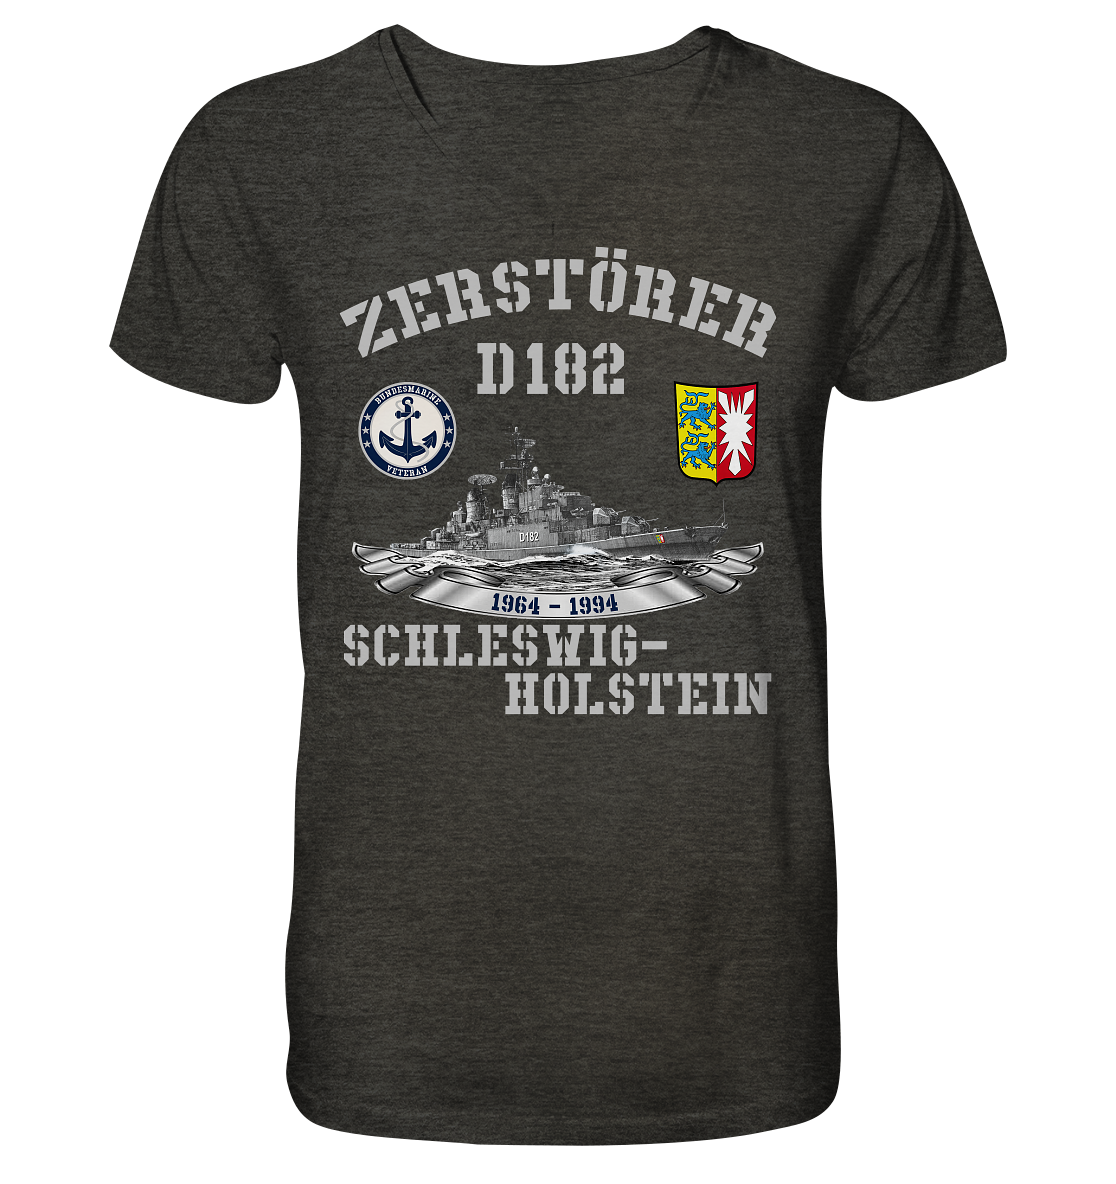 Zerstörer D182 SCHLESWIG-HOLSTEIN Bundesmarine Veteran - Mens Organic V-Neck Shirt